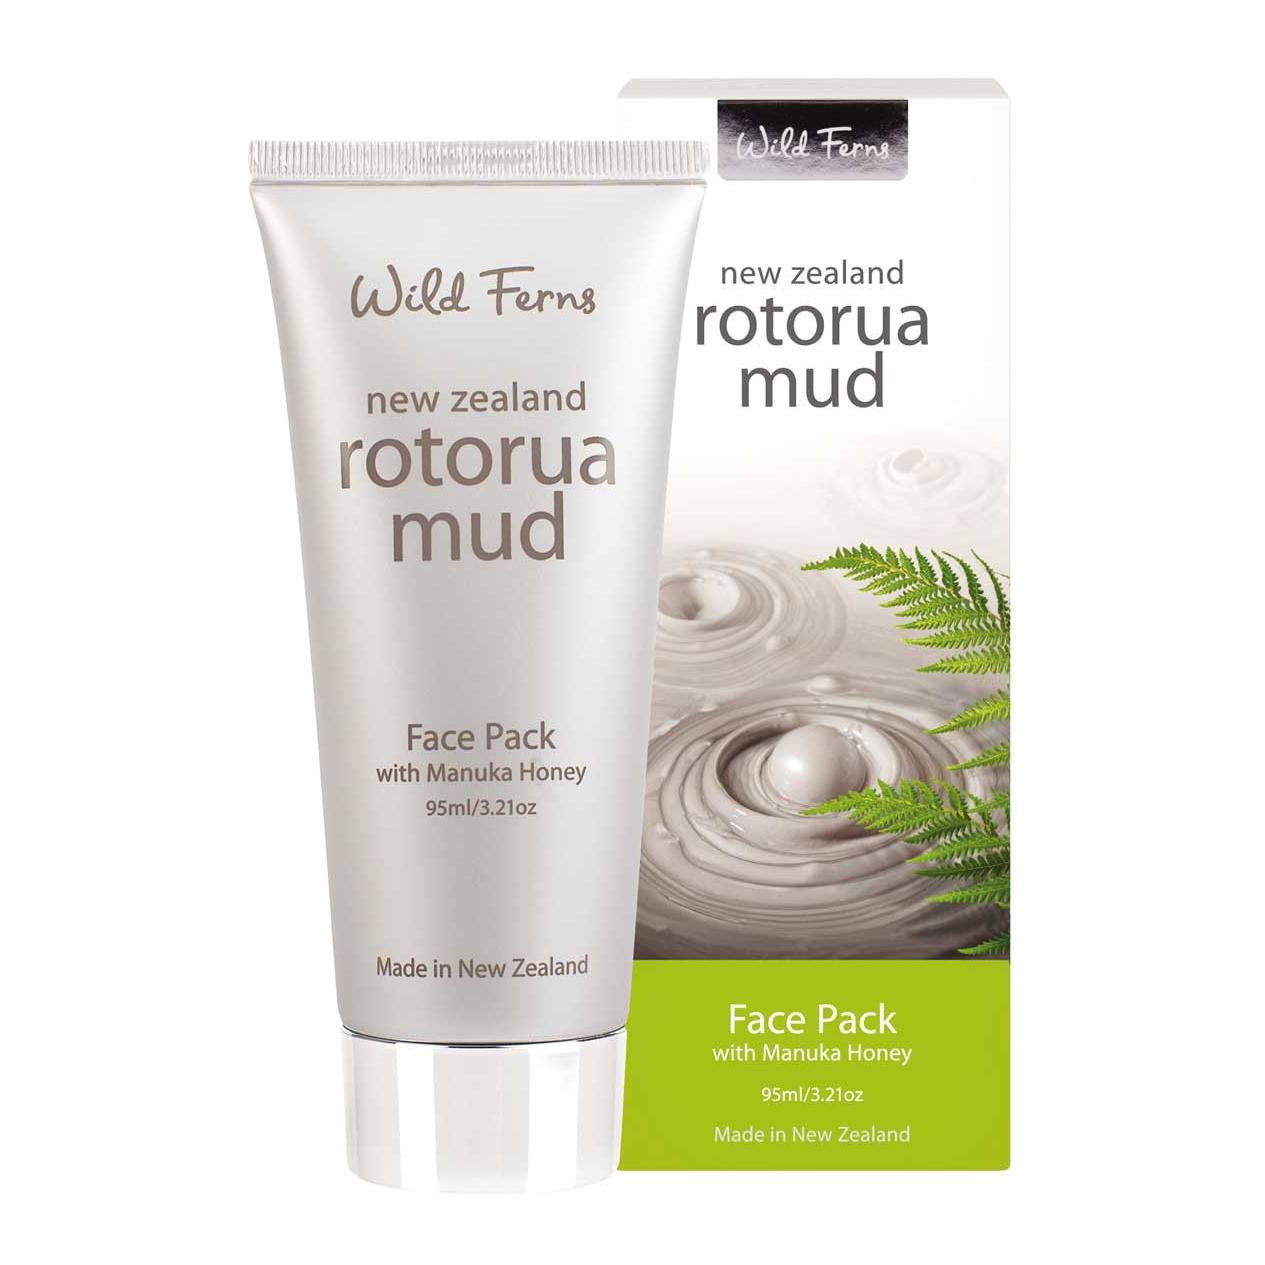 Wild Ferns Rotorua Mud Face Pack with Manuka Honey (95ml)